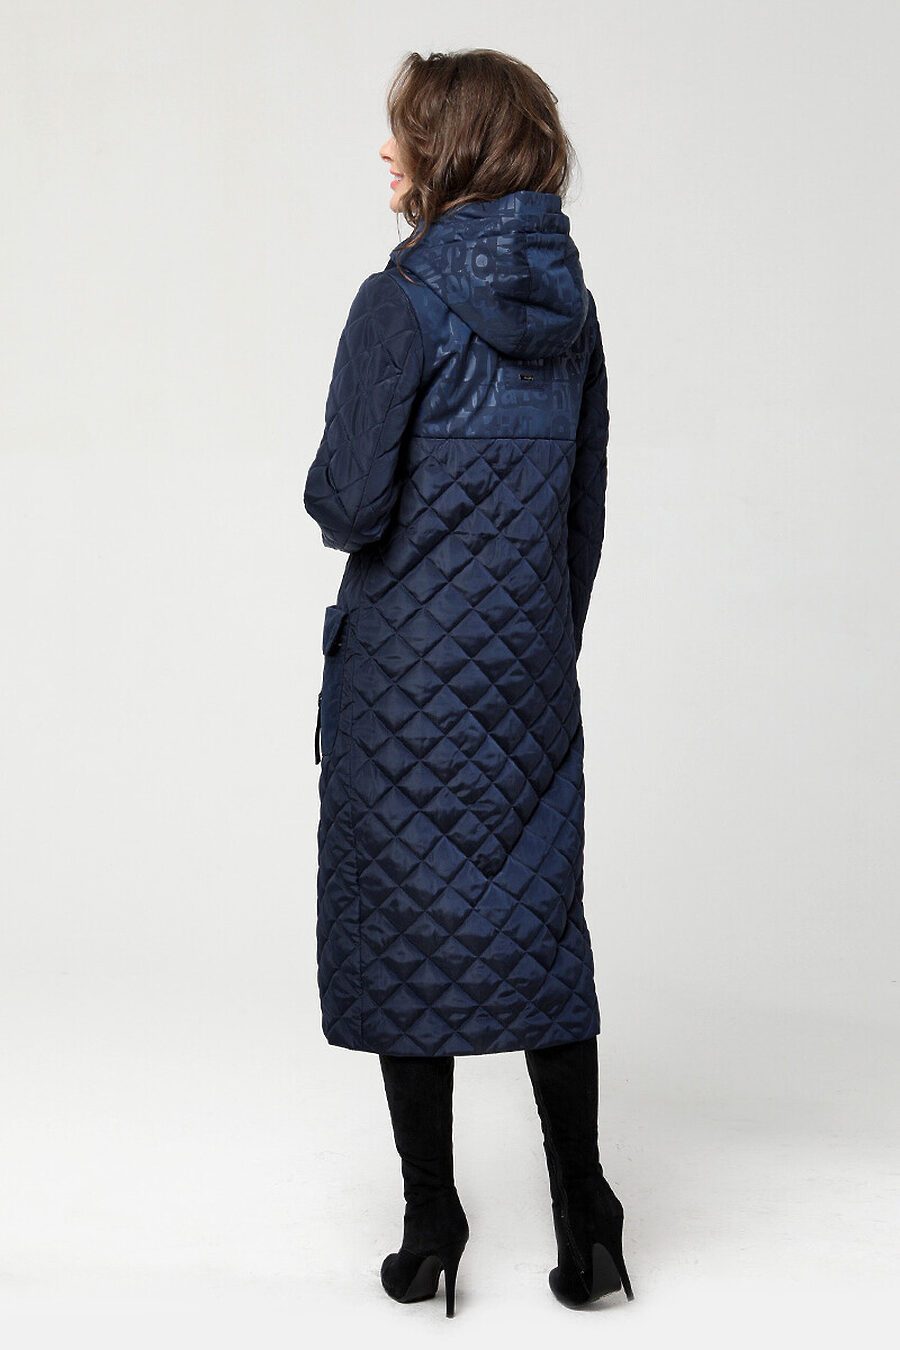 Пальто DIWAY (684811), купить в Moyo.moda